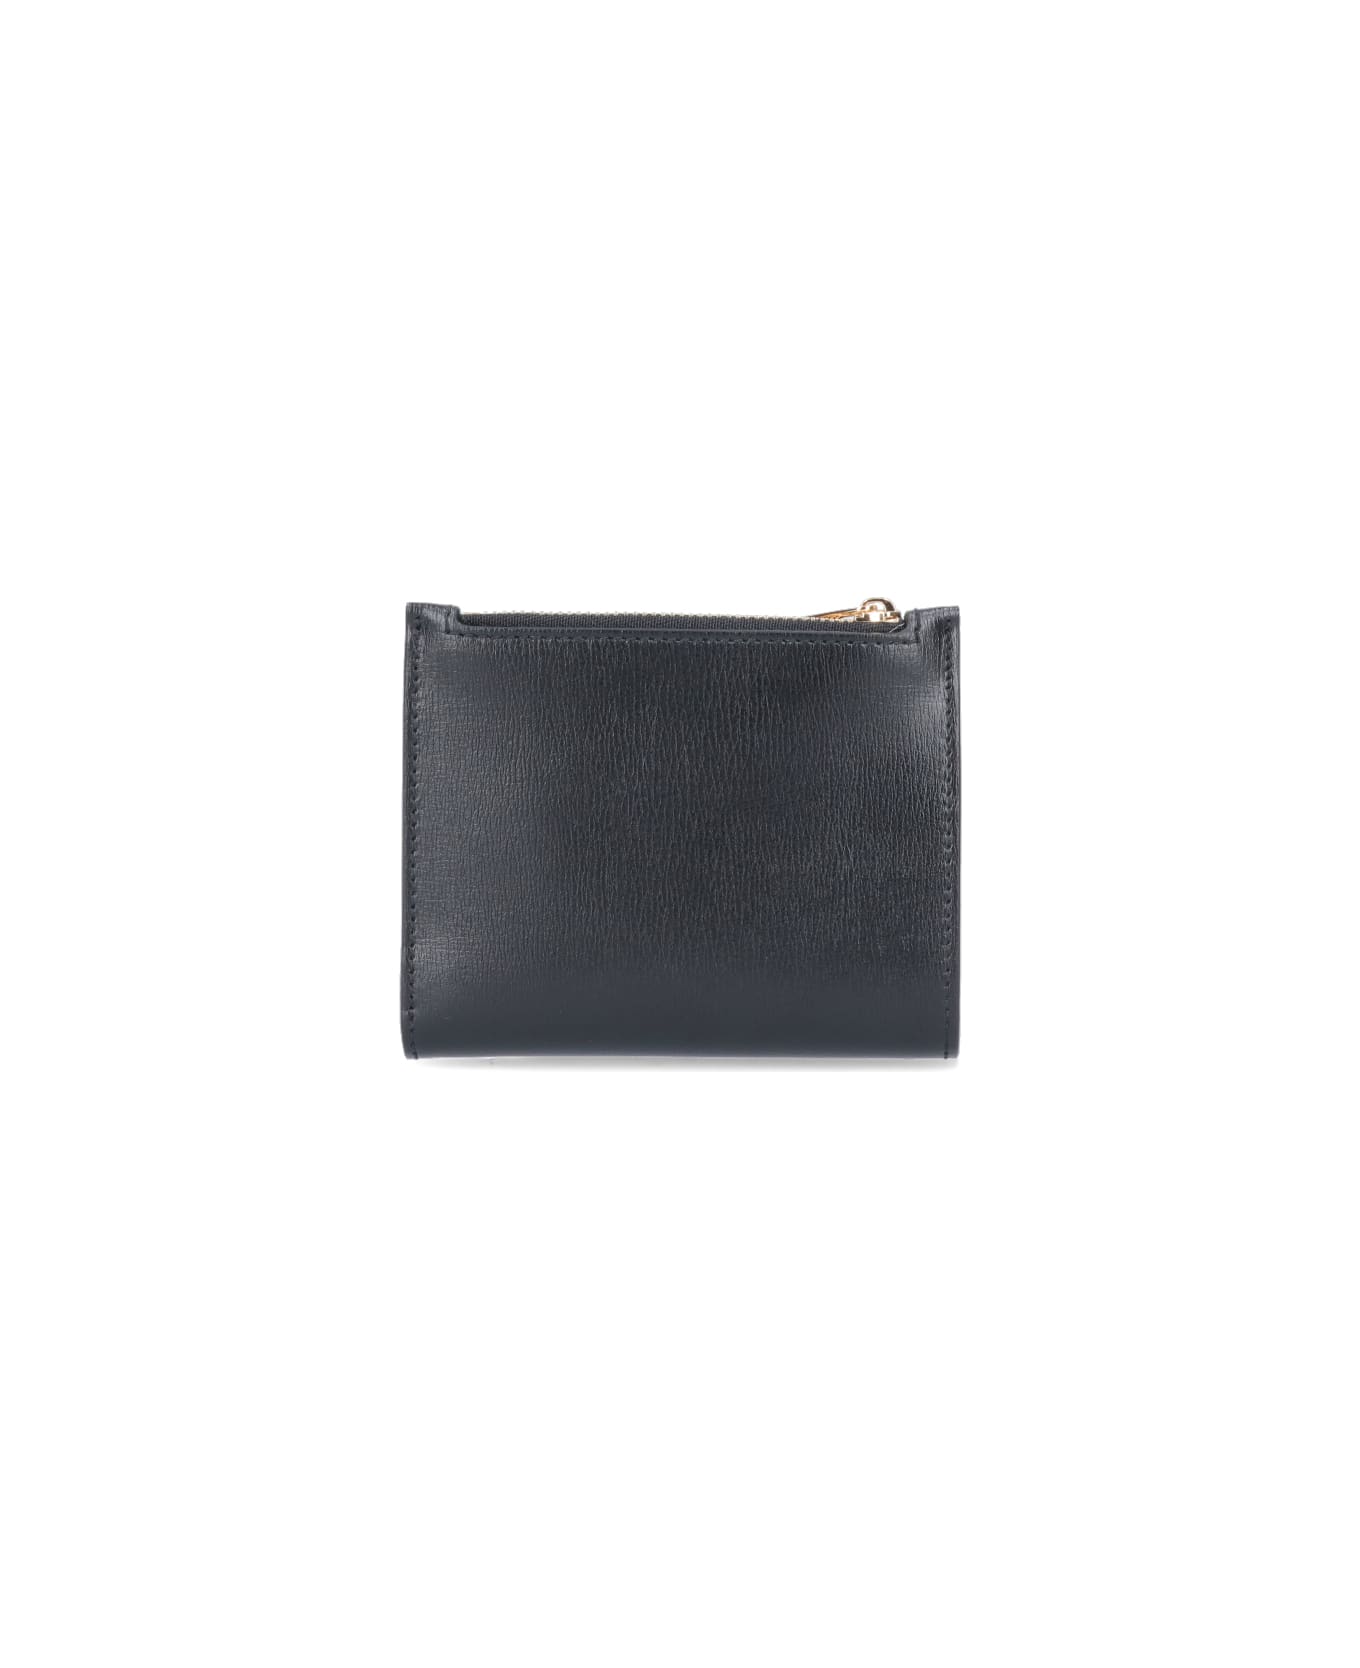 Ferragamo 'vara' Compact Wallet - NERO 財布